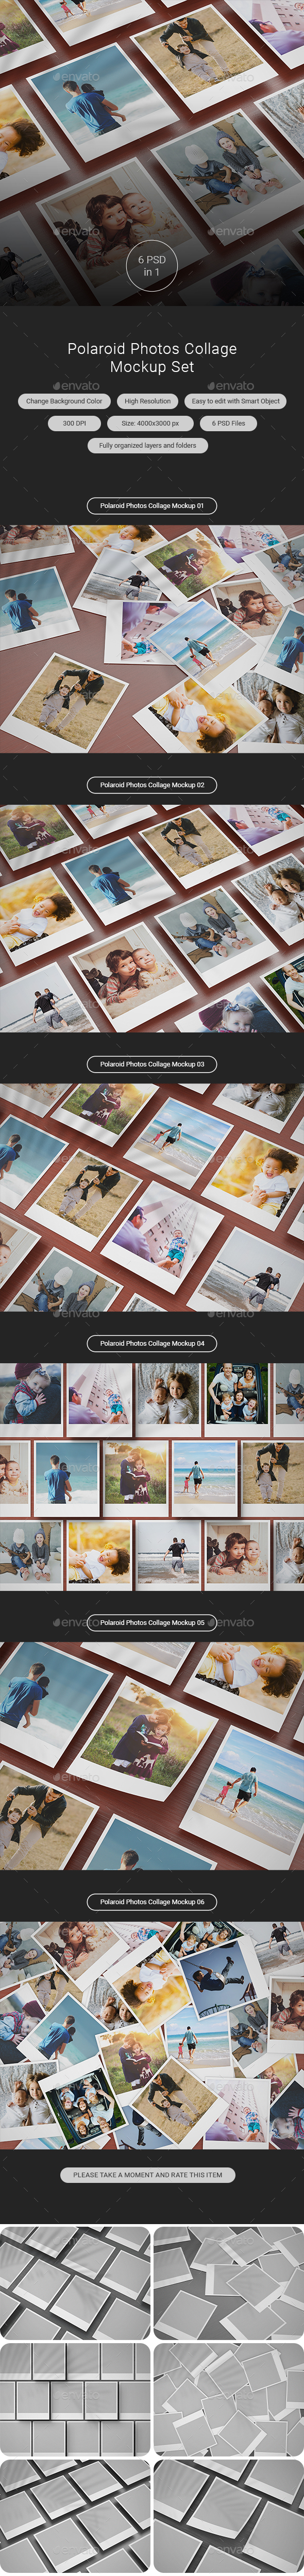 The Polaroid Photos Collage Mockup Set